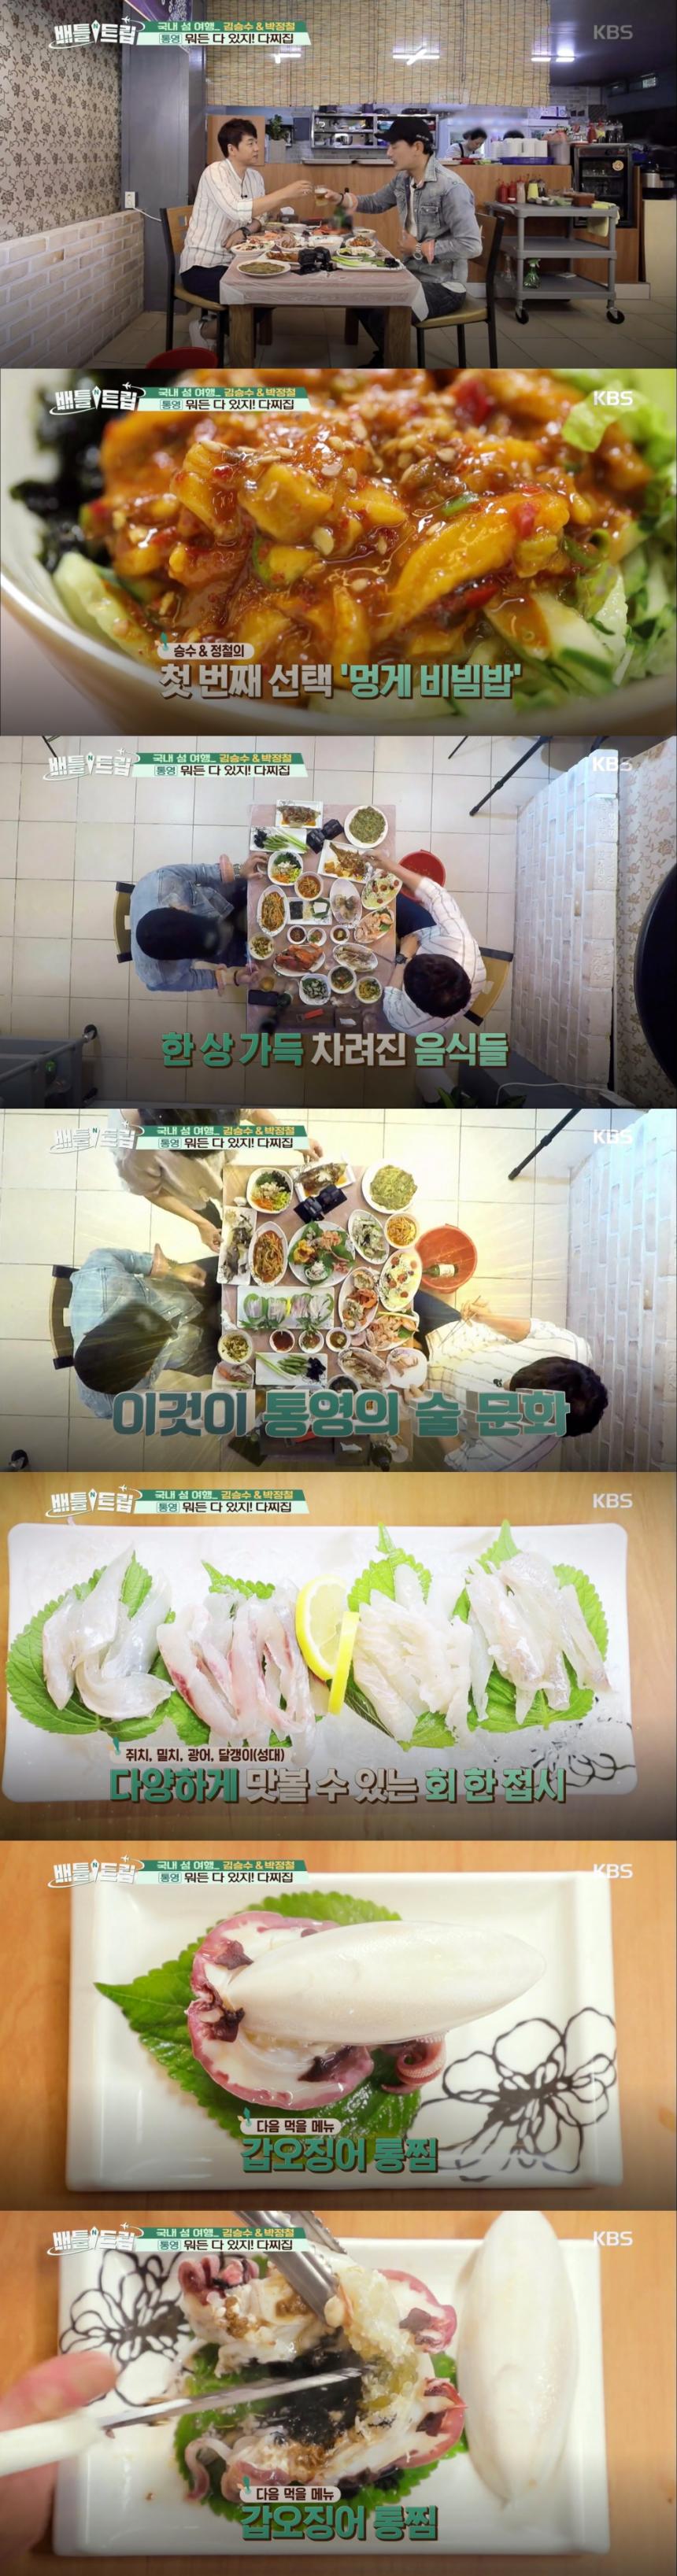 통영 다찌집 / KBS2 ‘배틀트립’ 방송 캡처